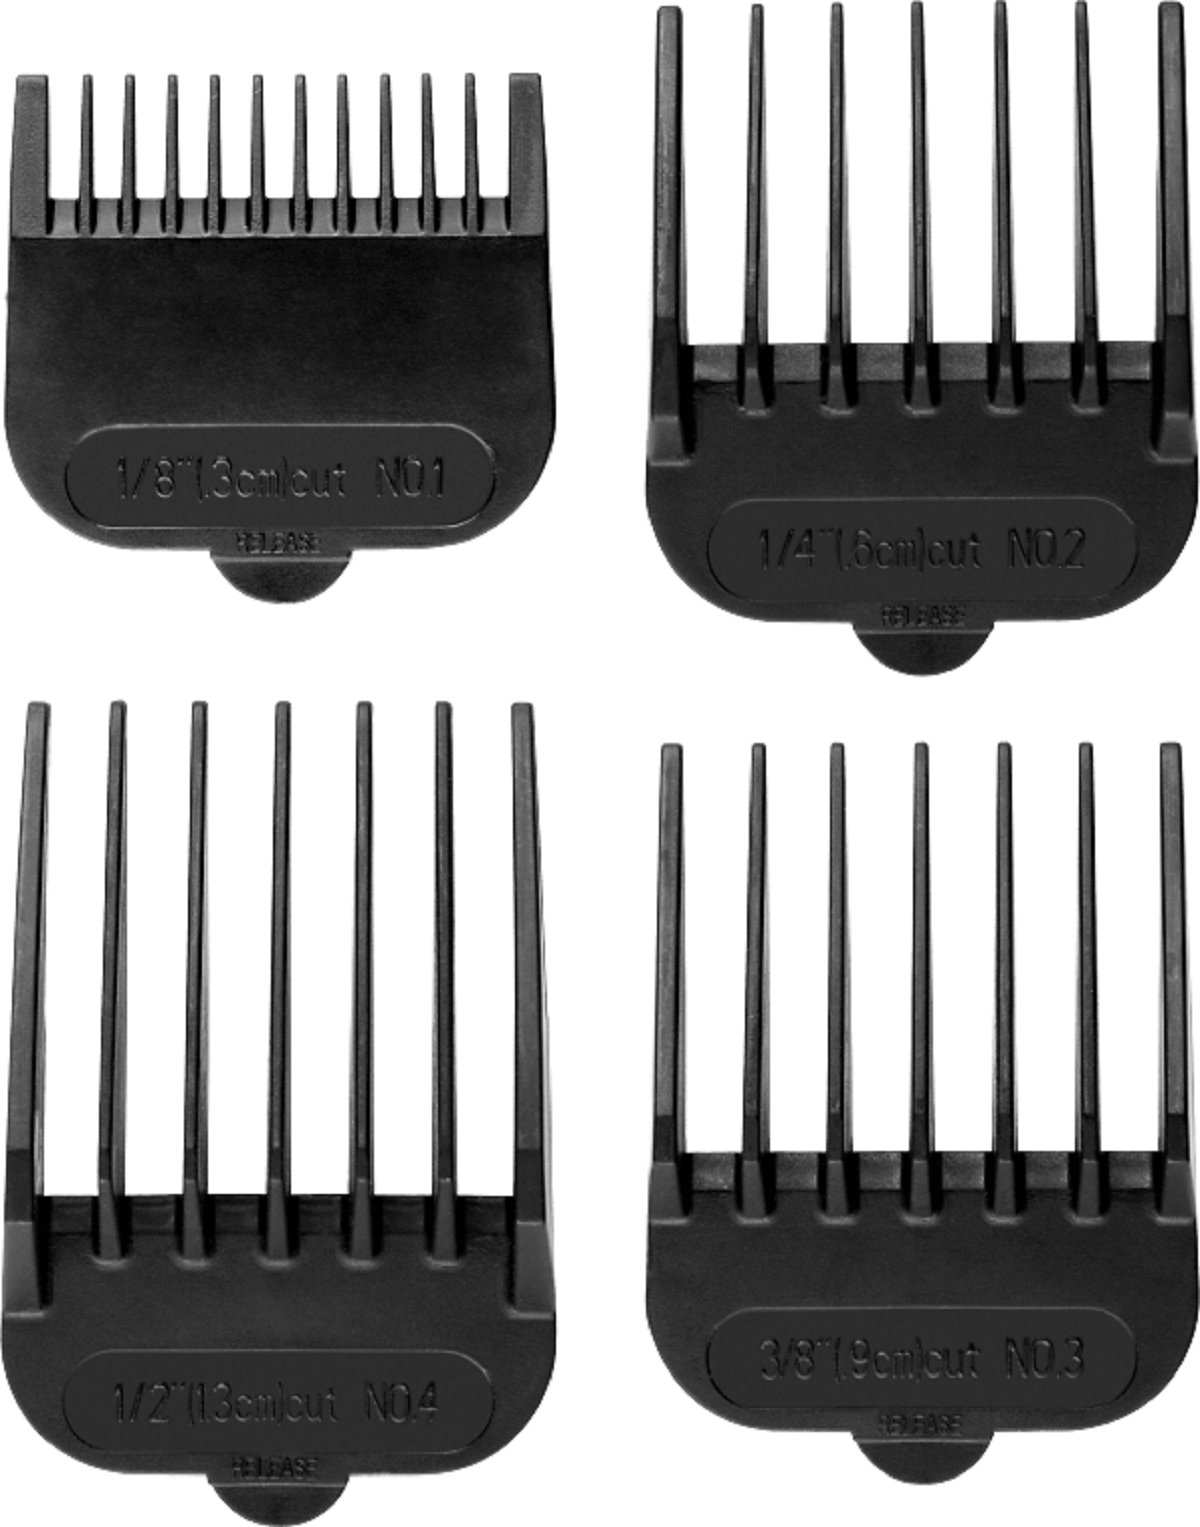 ECG ZS 1020 Black Schnittbreite Schwarz Stahl | - aus | 2,8 Haarschneider | rostfreiem mm 0,8 Klingen